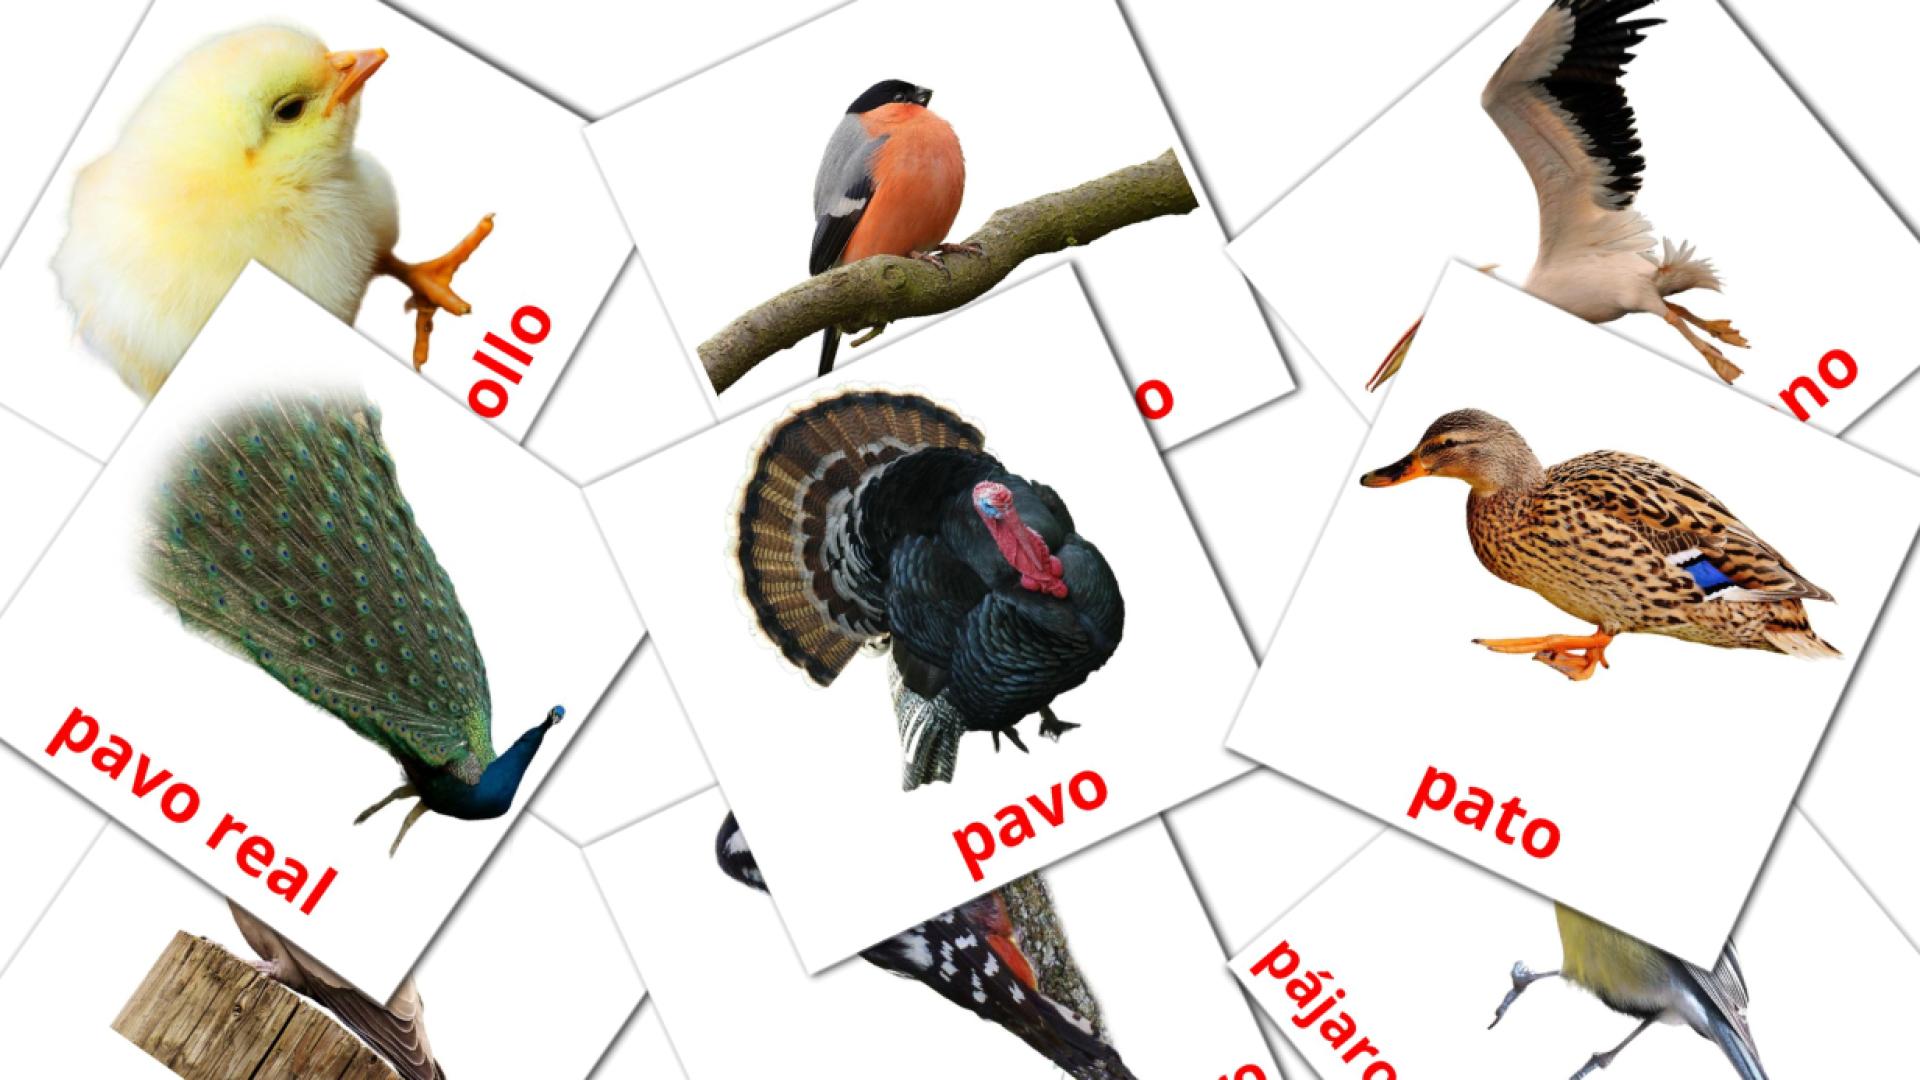 euskera tarjetas de vocabulario en Aves